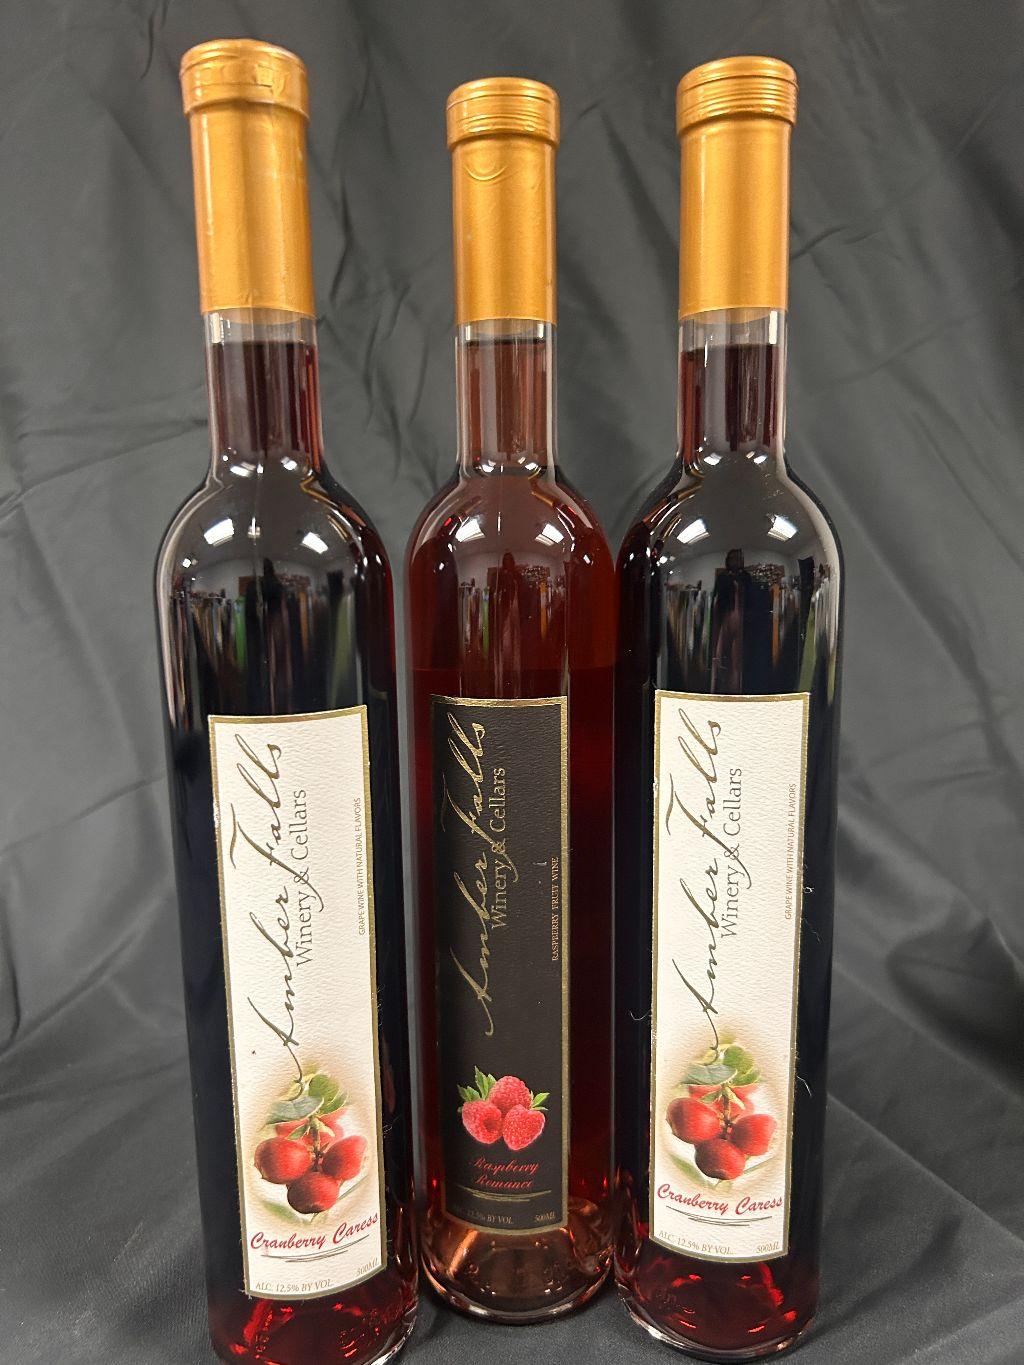 Amber Falls Winery & Cellars (3) Bottles